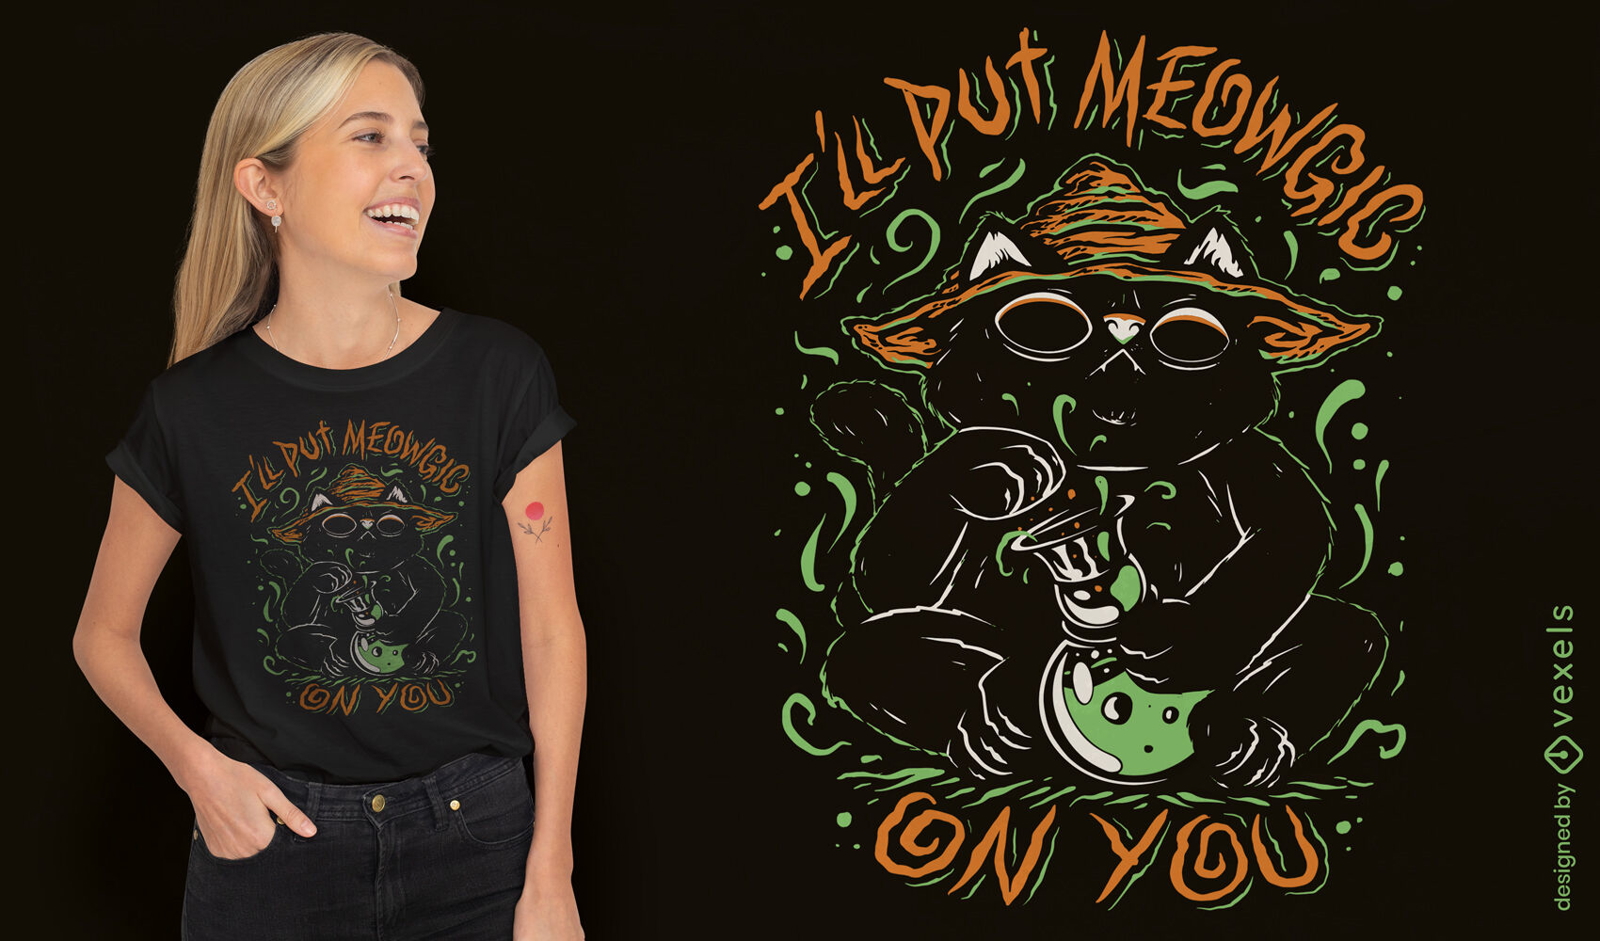 Witch cat Halloween t-shirt design